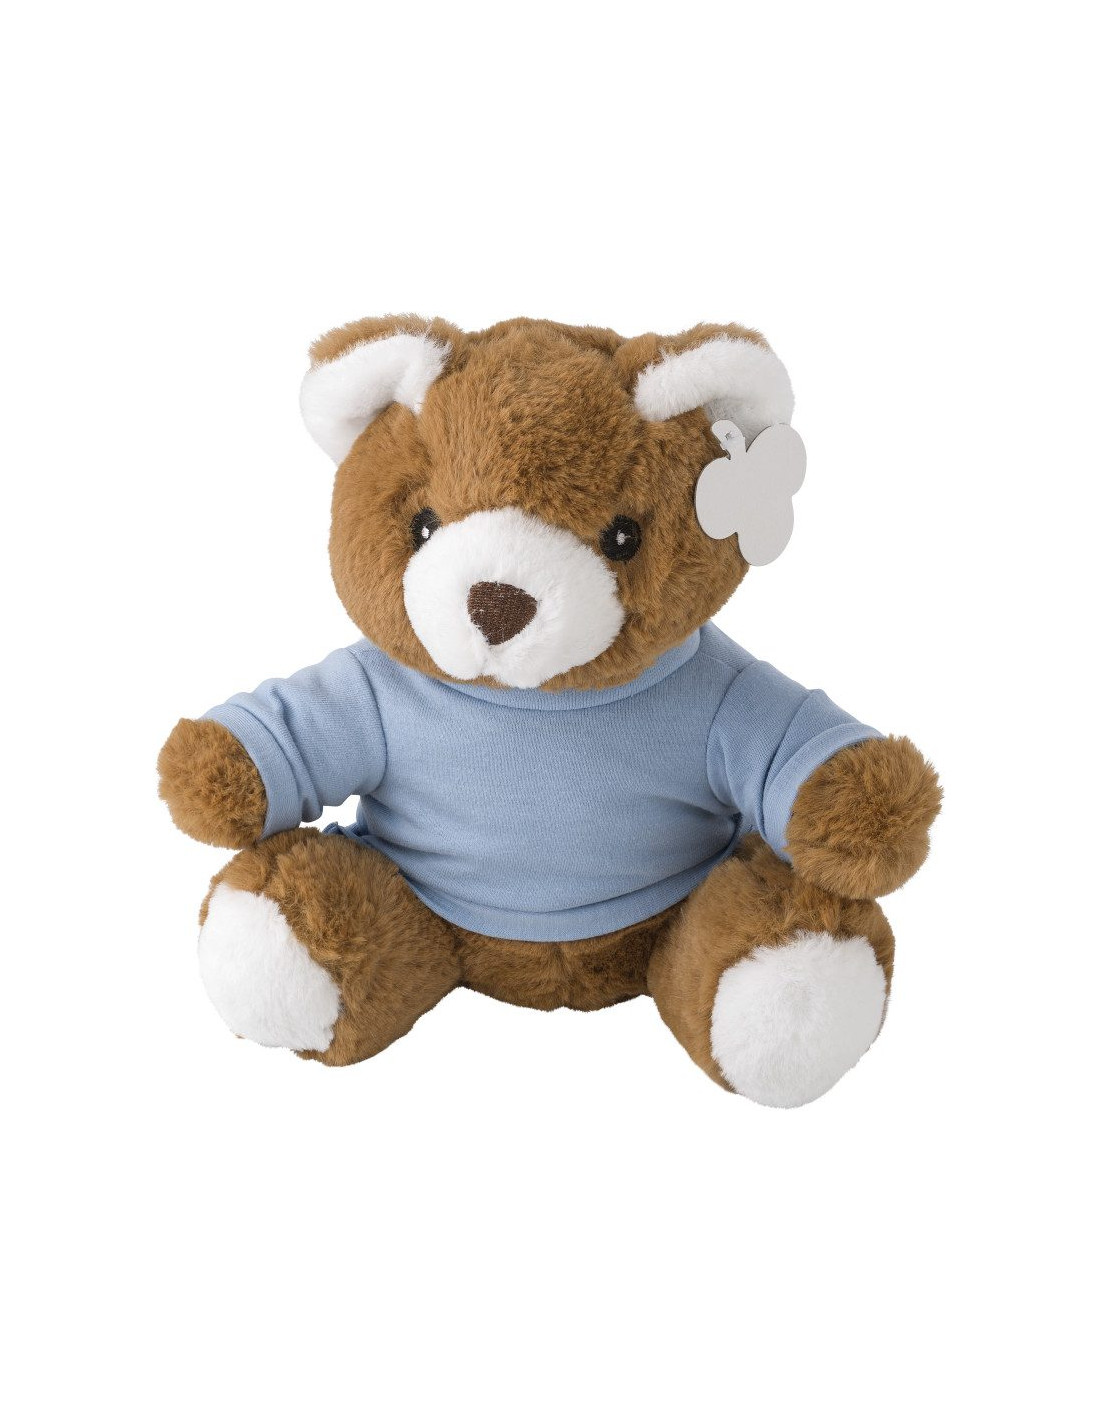 El algodón suave de oso de peluche personalizados para bebés